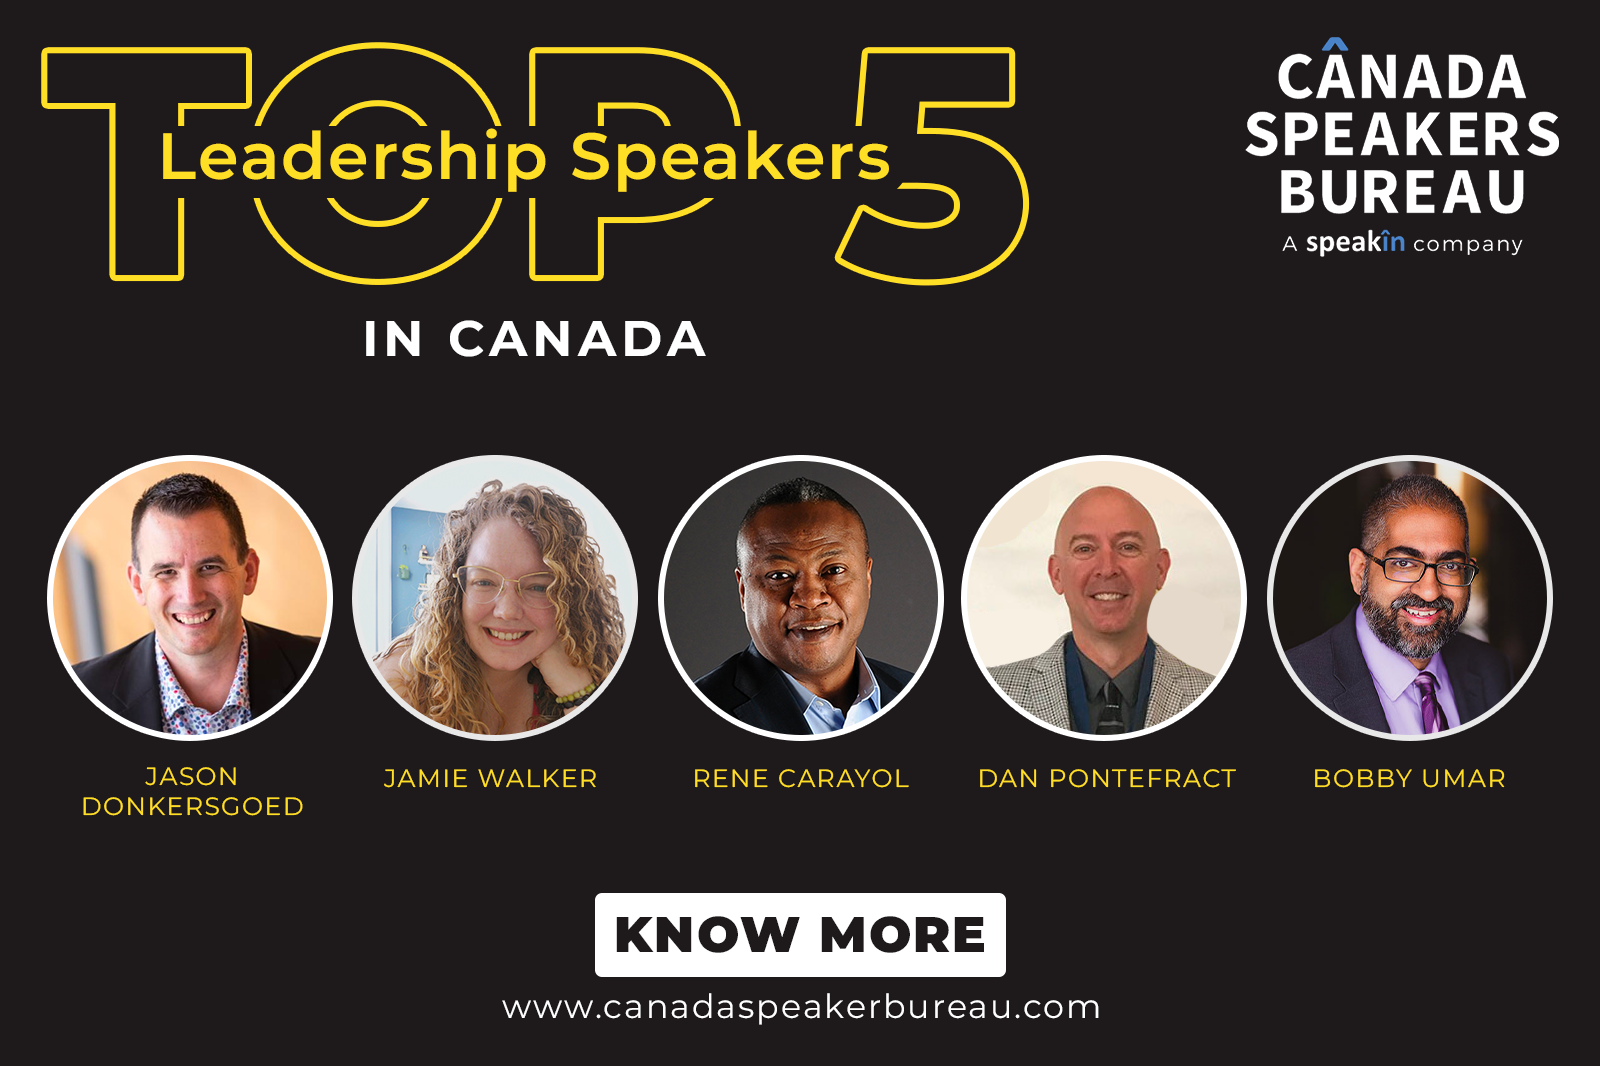 Top 5 Leadership Speakers in Canada